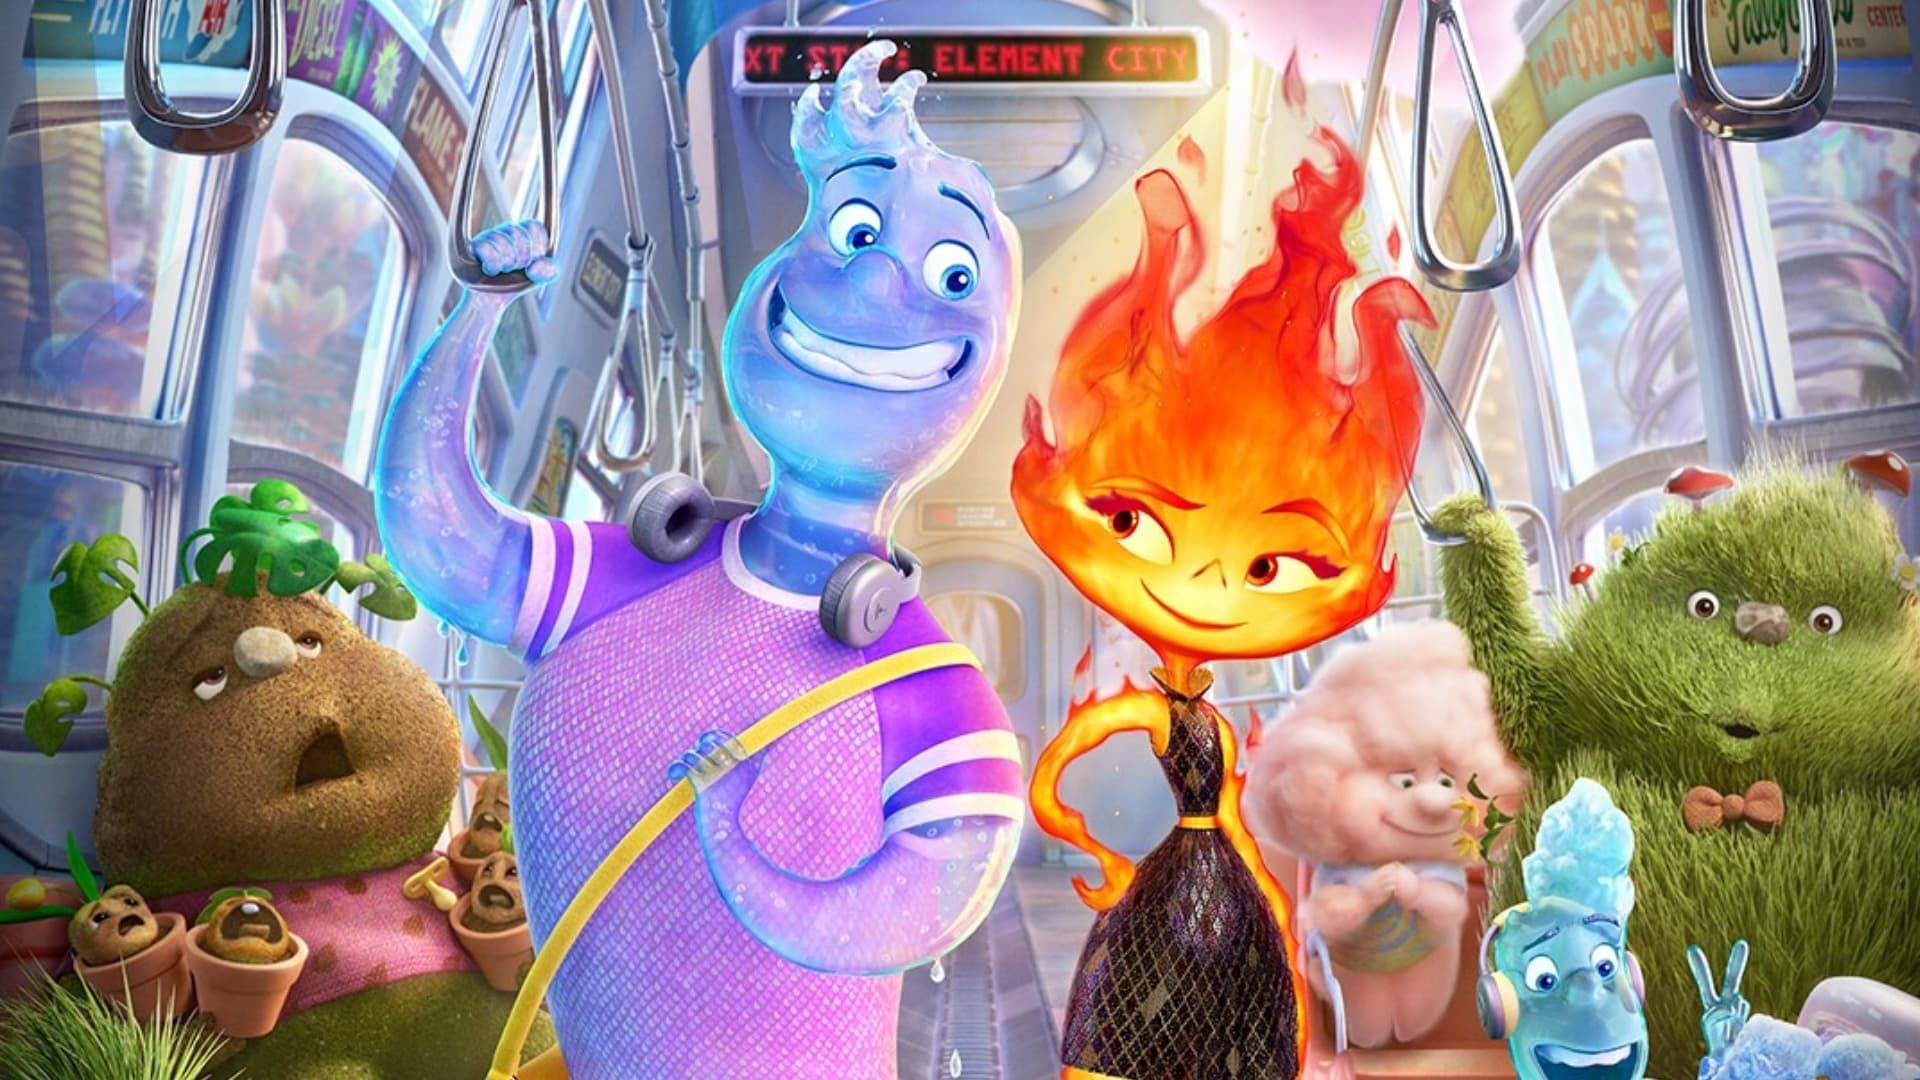 Elementos: Curiosidades sobre a nova animação da Pixar